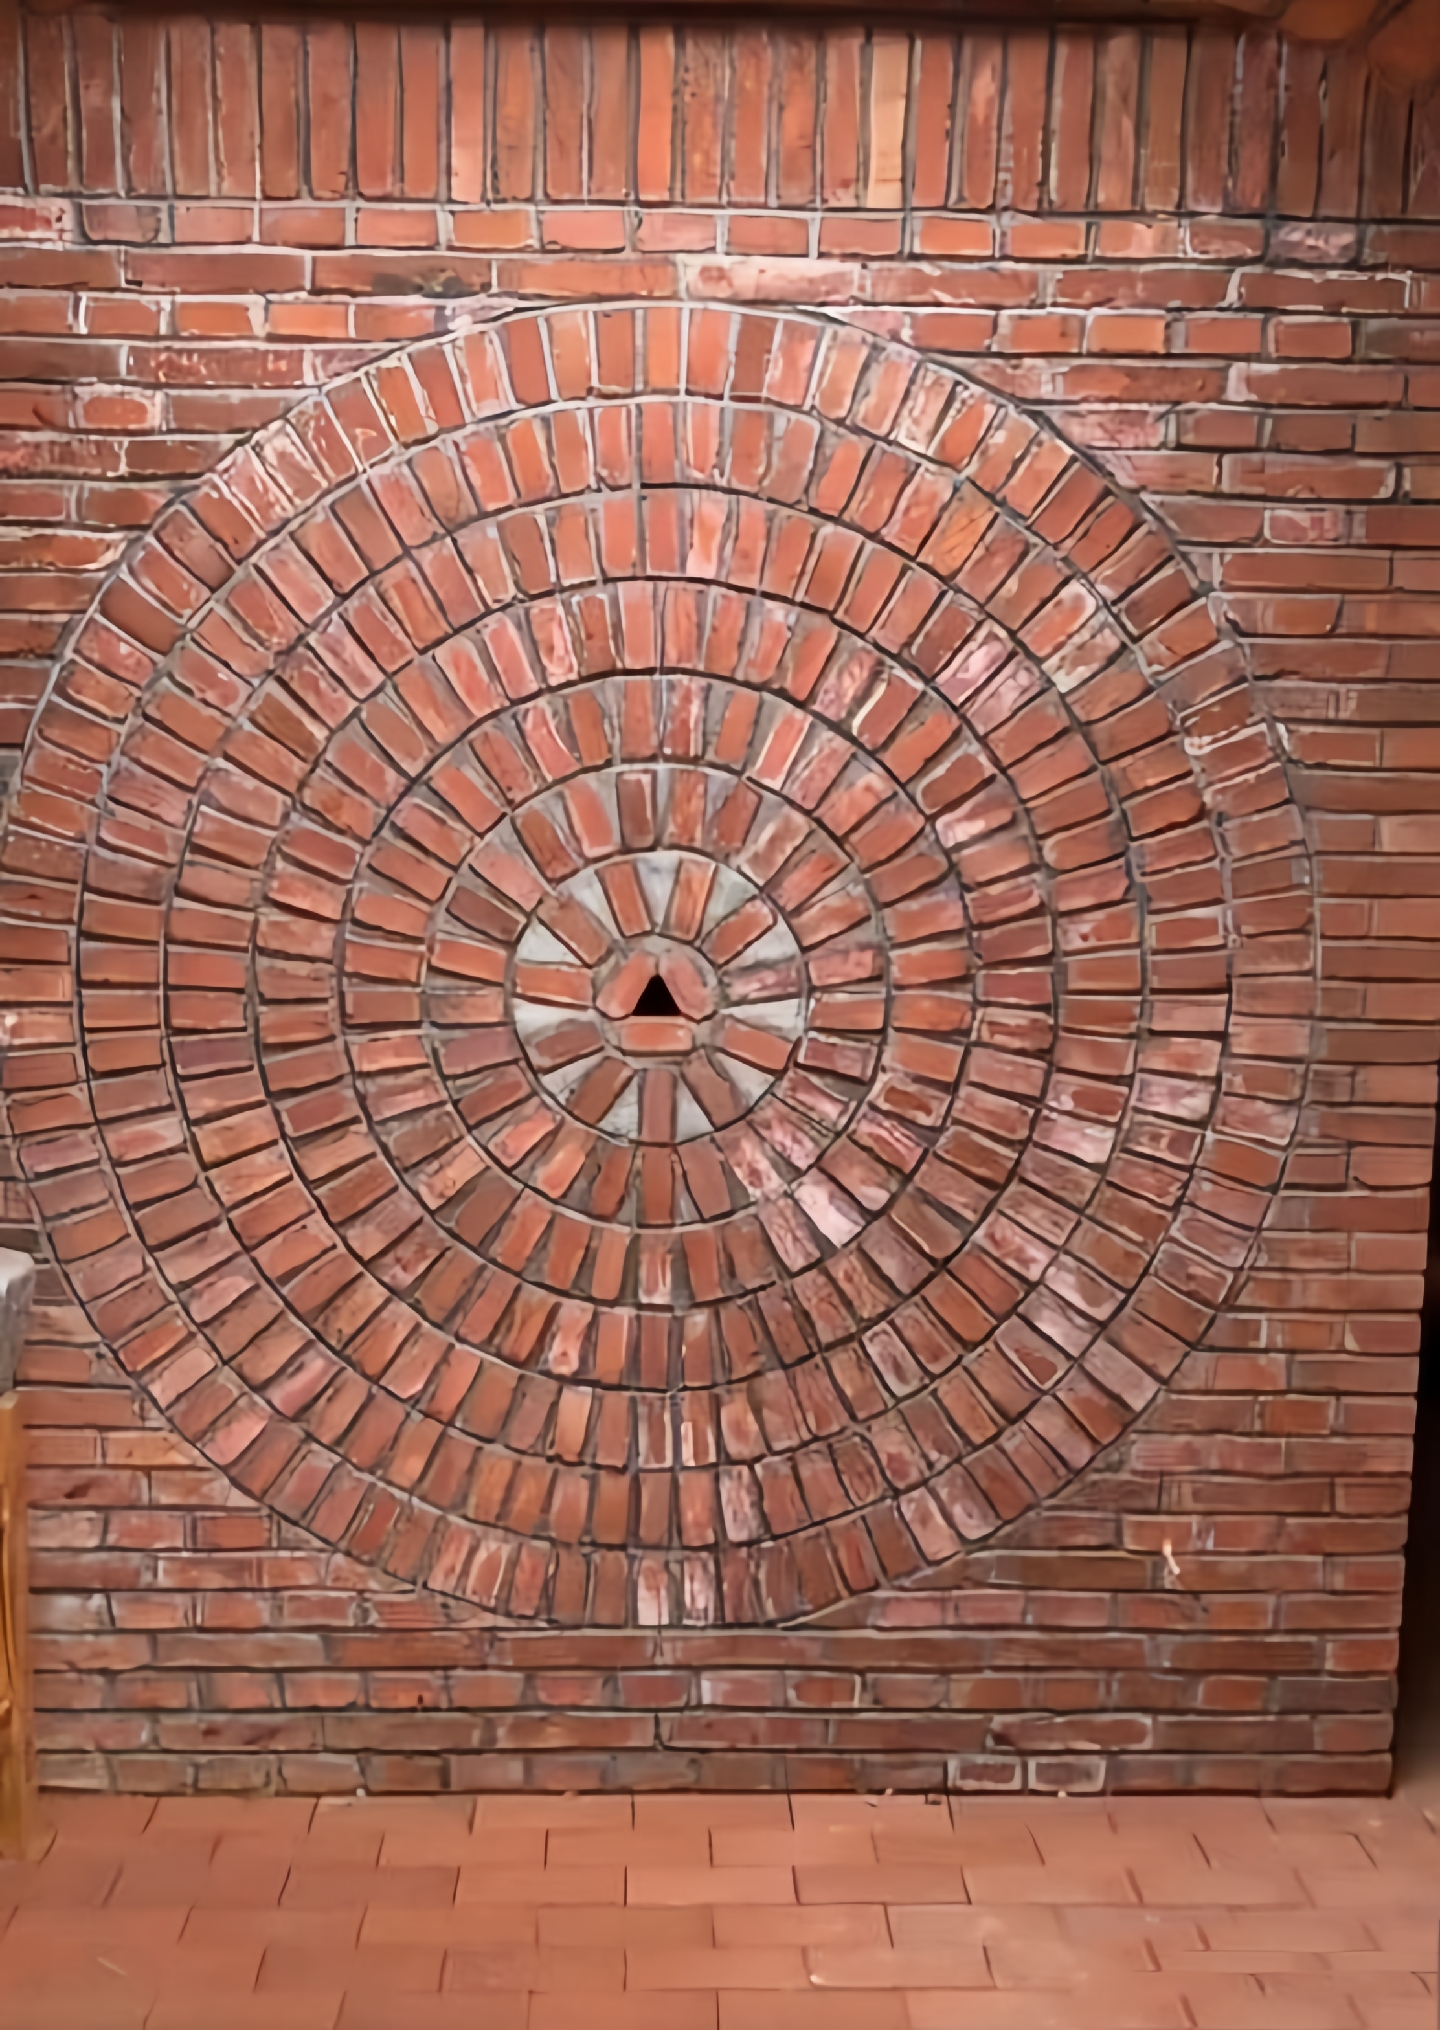 这砌砖的手艺震撼到了我,真称得上是一件难得的艺术品,不愧是一道独特